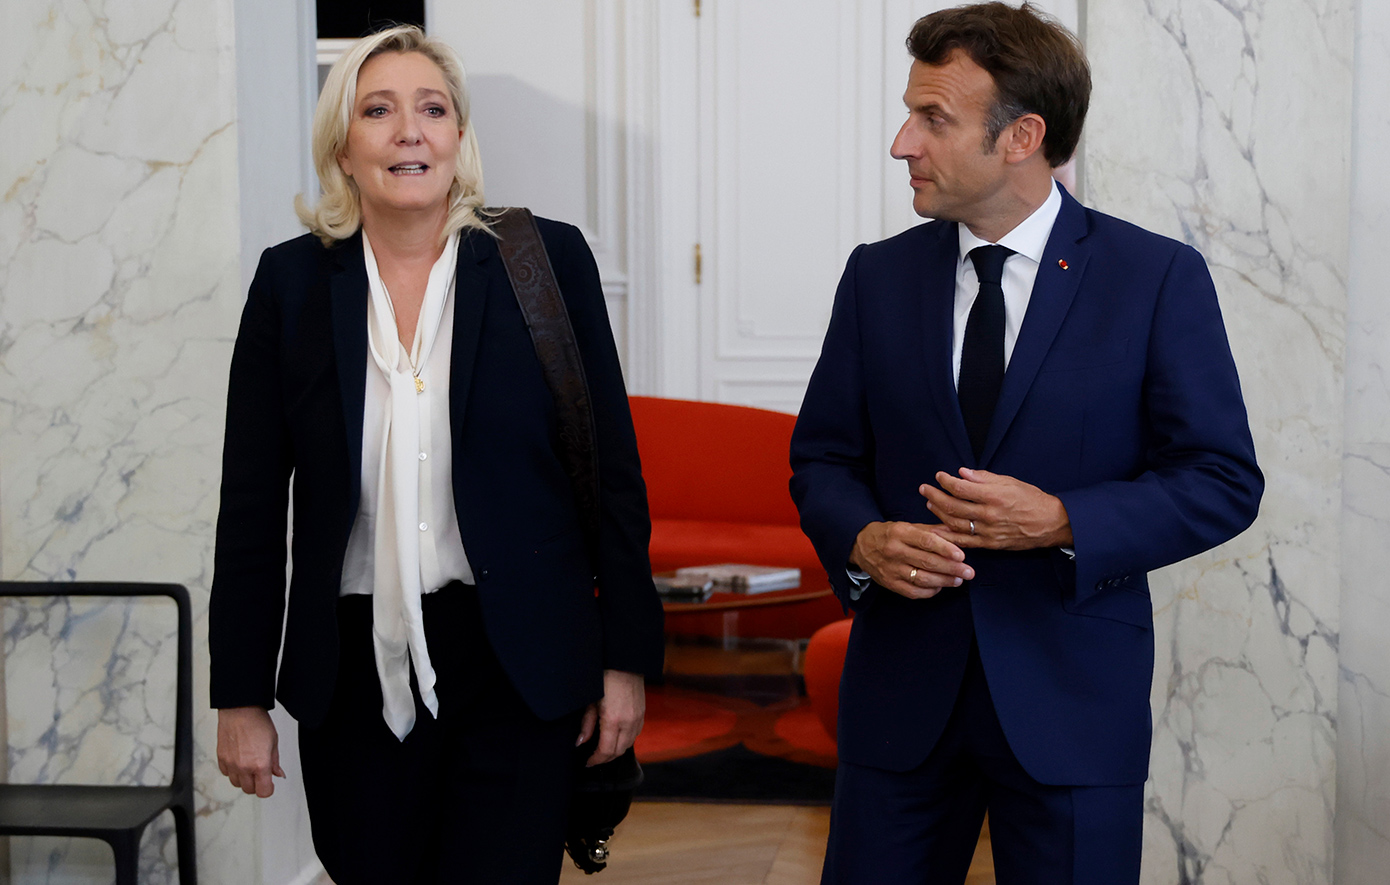 Το εκλογικό «στοίχημα» του Μακρόν απειλεί να ανατρέψει την πολιτική τάξη πραγμάτων στη Γαλλία – Η ακροδεξιά κοντά στην εξουσία